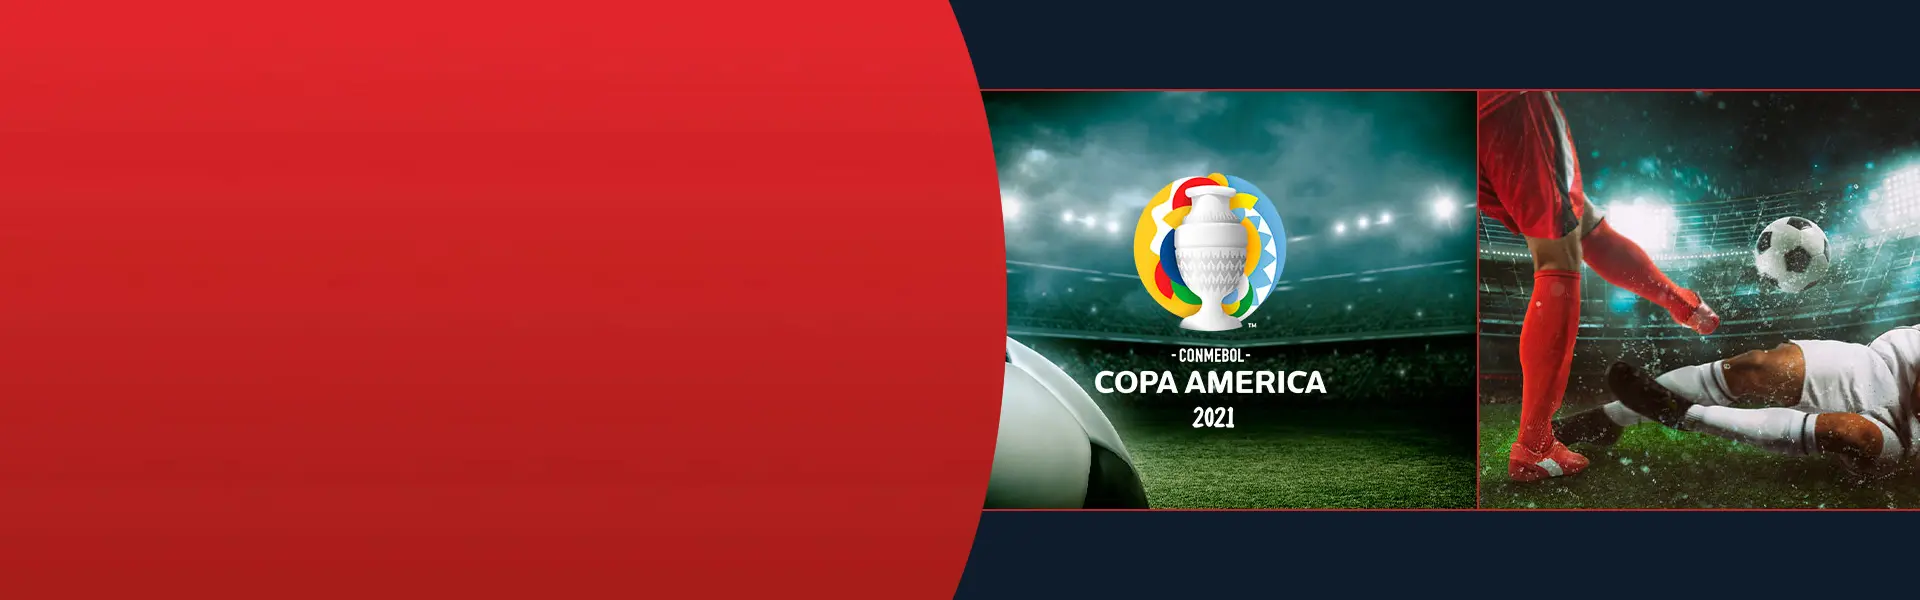 Imagem do logo CONMEBOL Copa América 2021 e jogadores em disputa de bola.